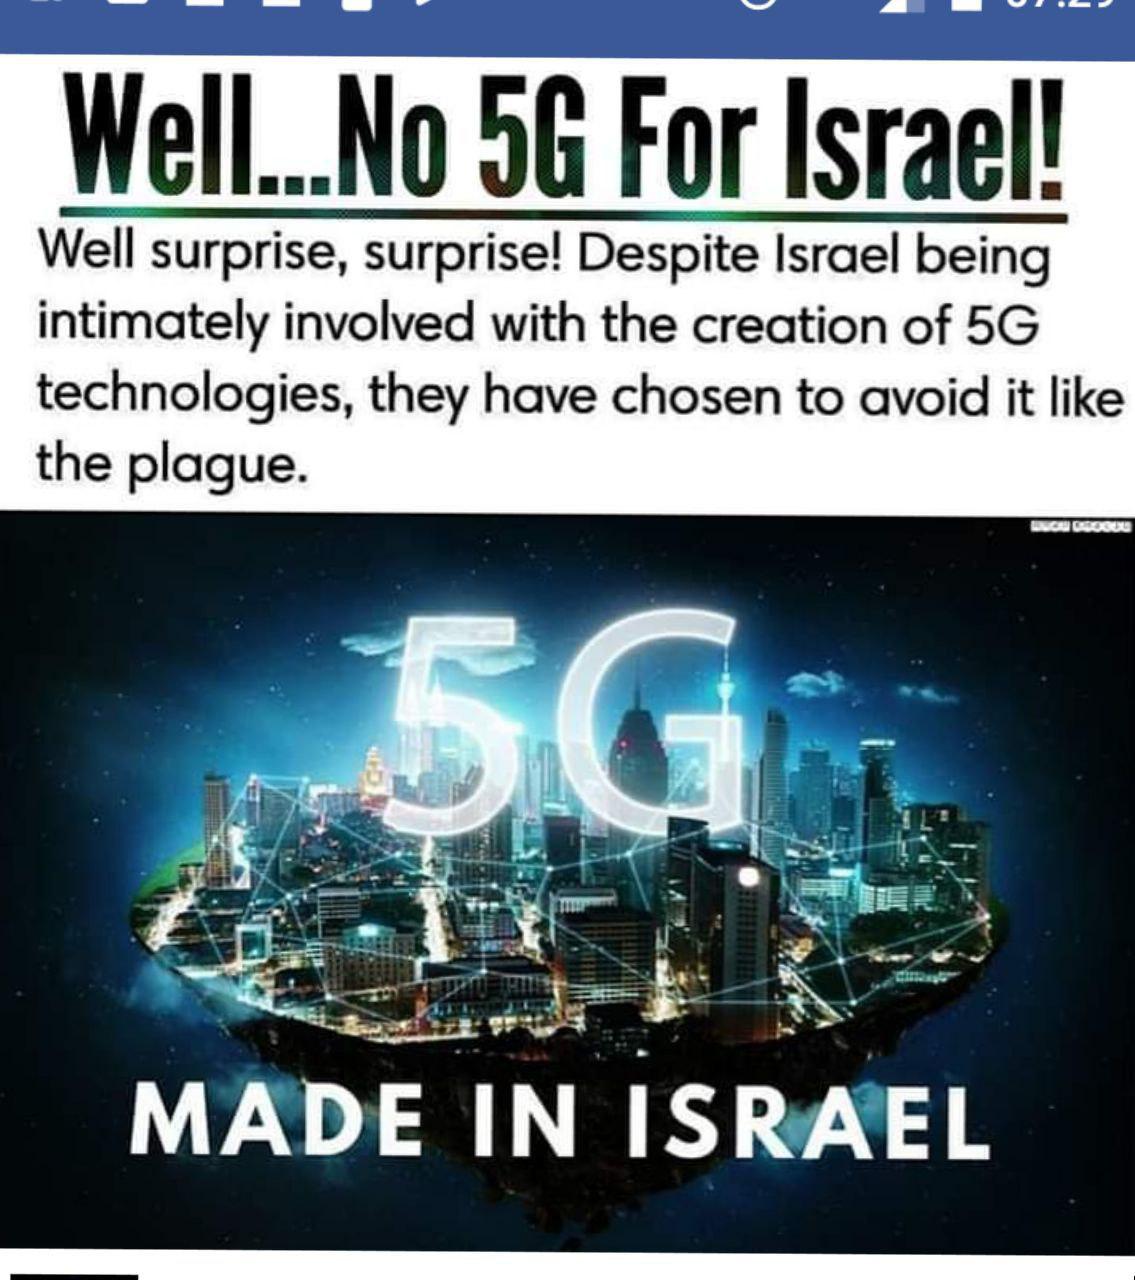 تکنولوژی ۵G ساخت اسرائیل است اما استفاده از این تکنولوژی در اسرائیل ممنوع است!